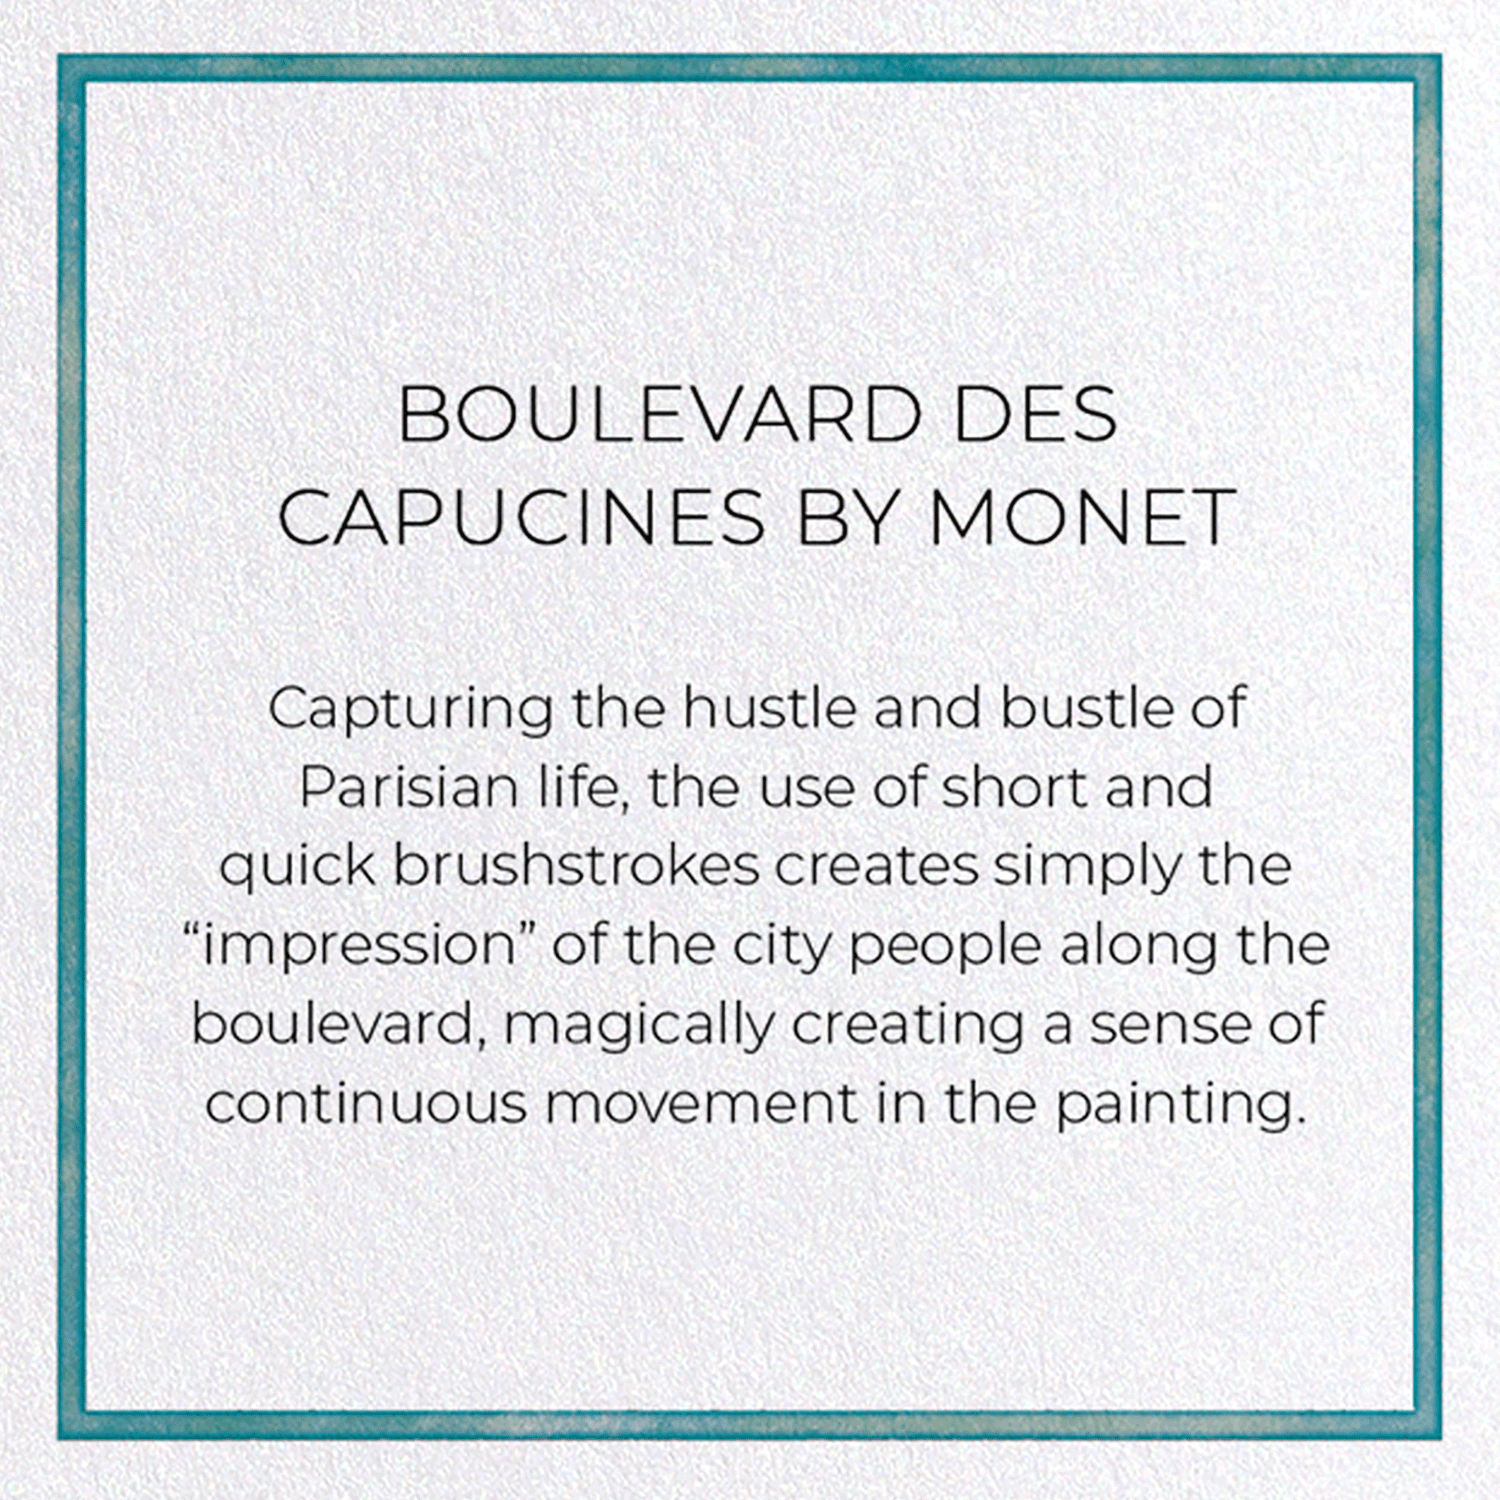 BOULEVARD DES CAPUCINES BY MONET